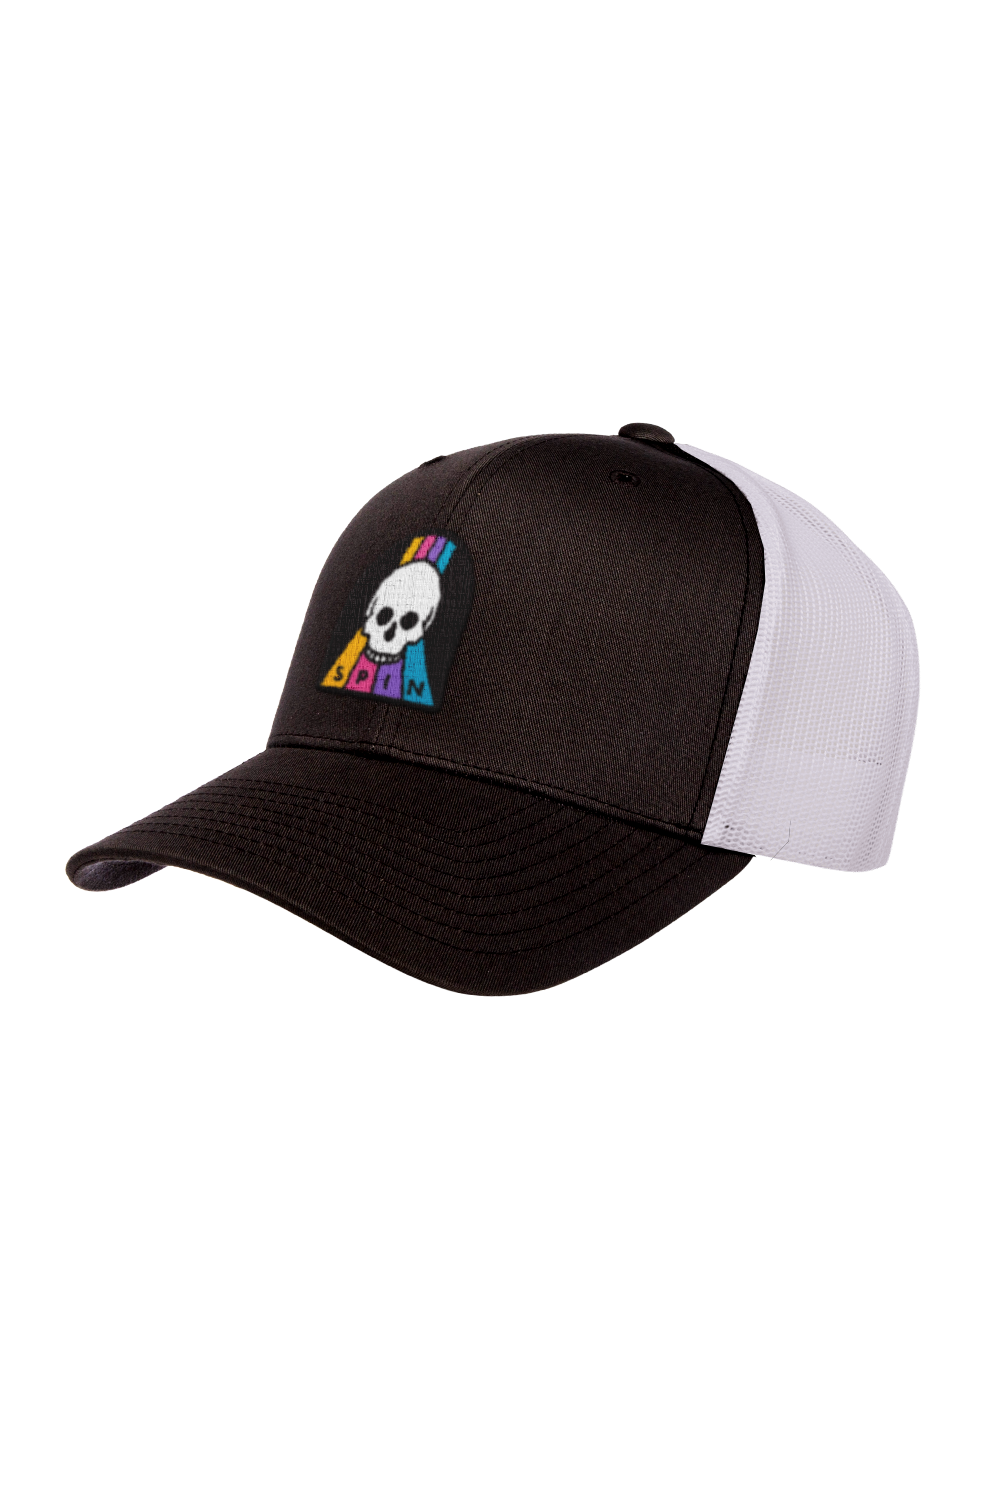 Skull Trucker Hat